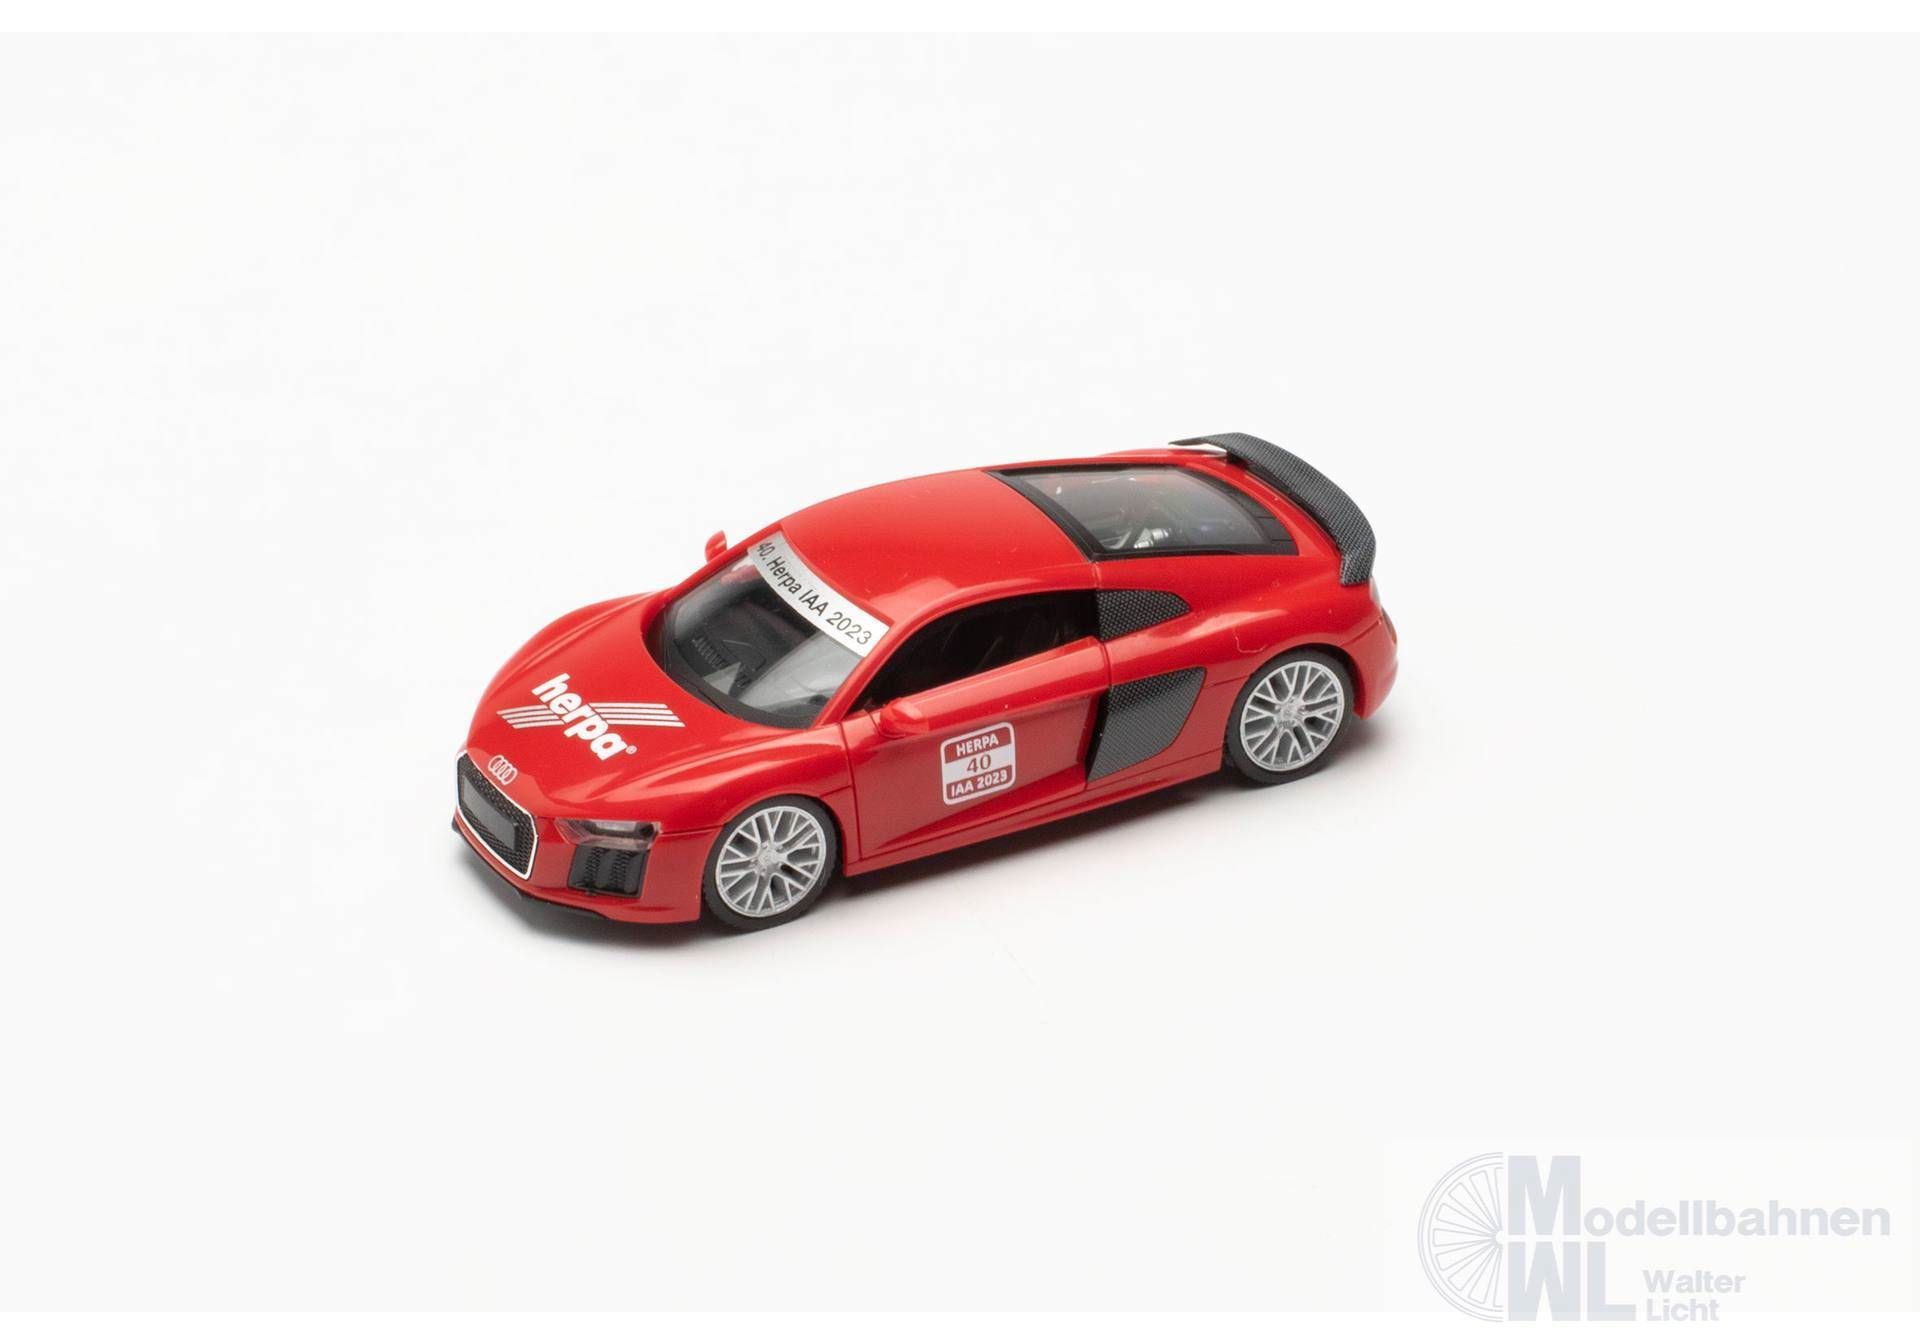 Herpa 953993 - Messemodell Audi R8 V10+, 40. Herpa IAA 2023 1:87